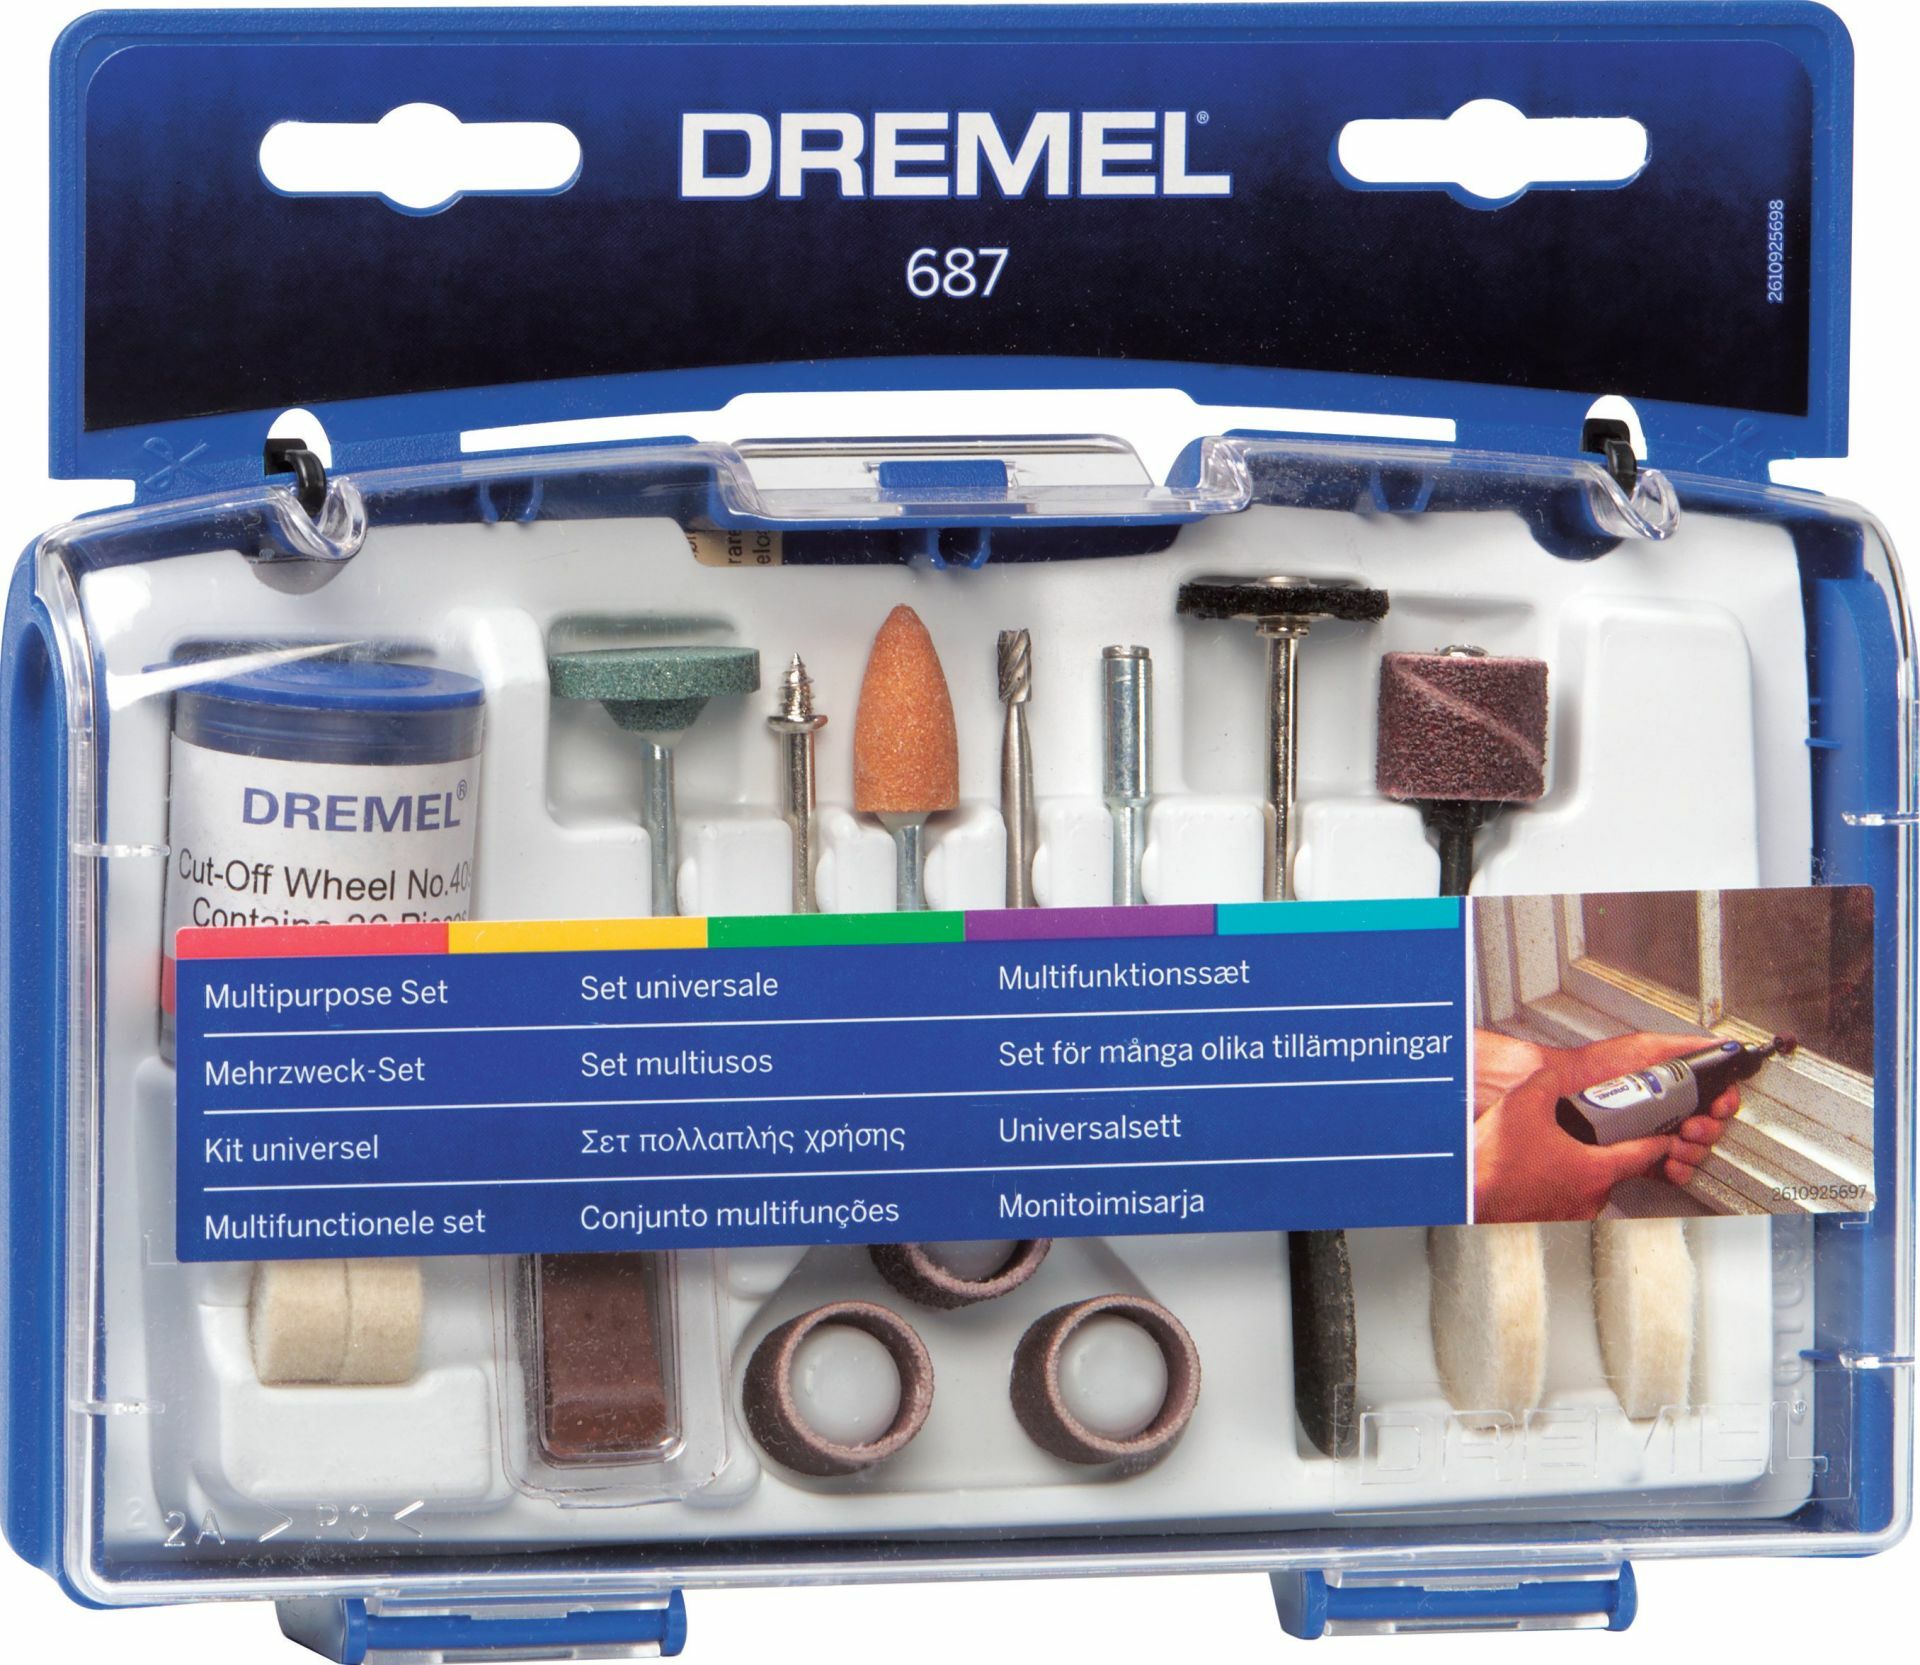 DREMEL® Çok amaçlı set (687)